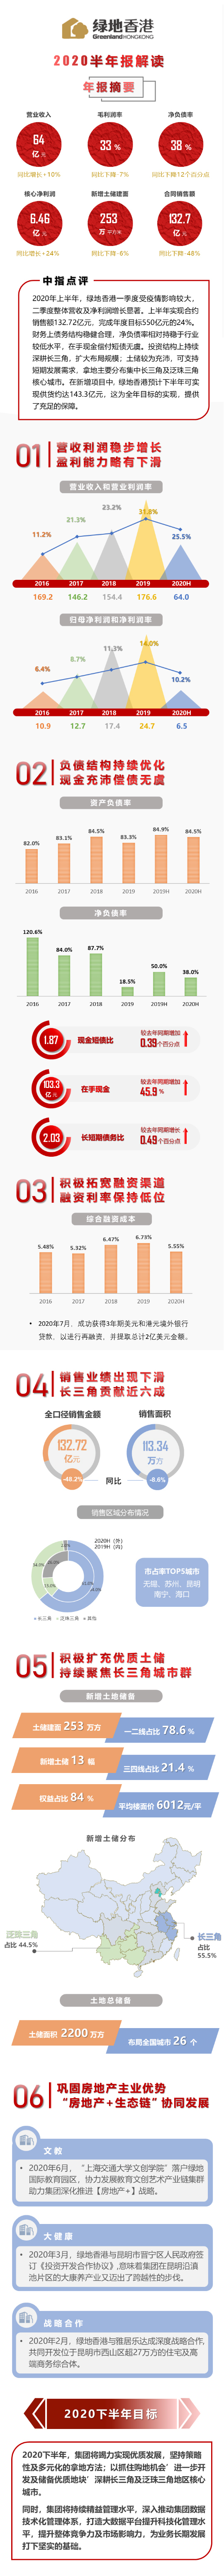 中期业绩解读 | 绿地香港：核心业绩稳定增长，负债结构持续优化